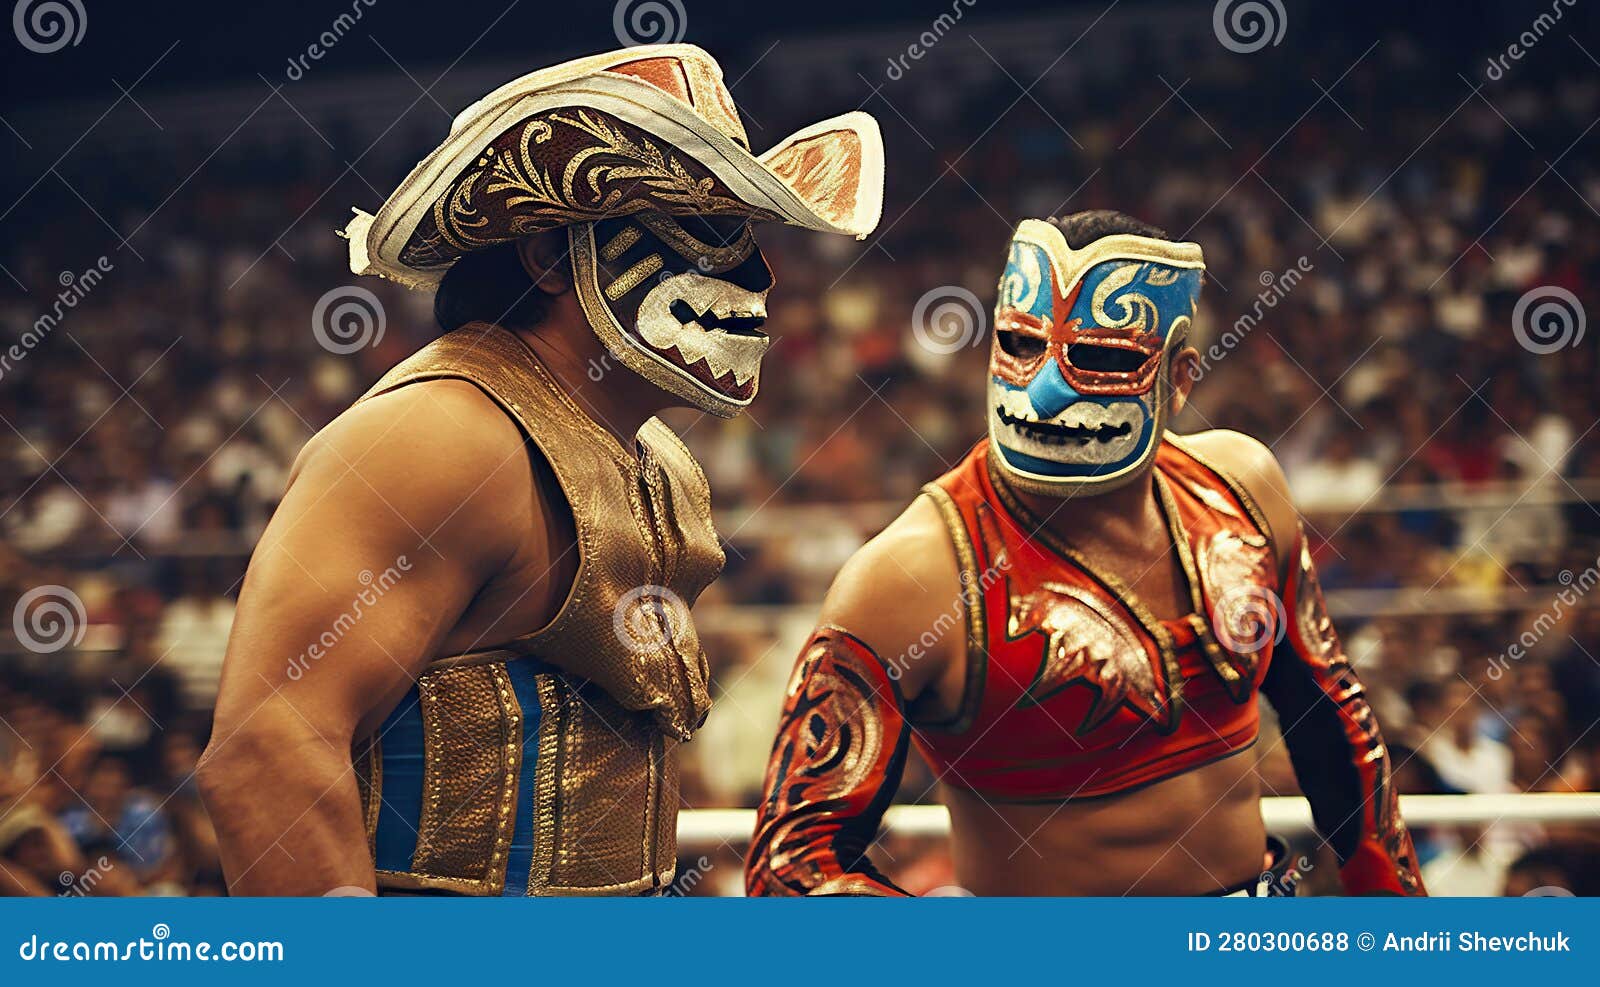 Retrato de luta livre mexicana - Stockphoto #9283626